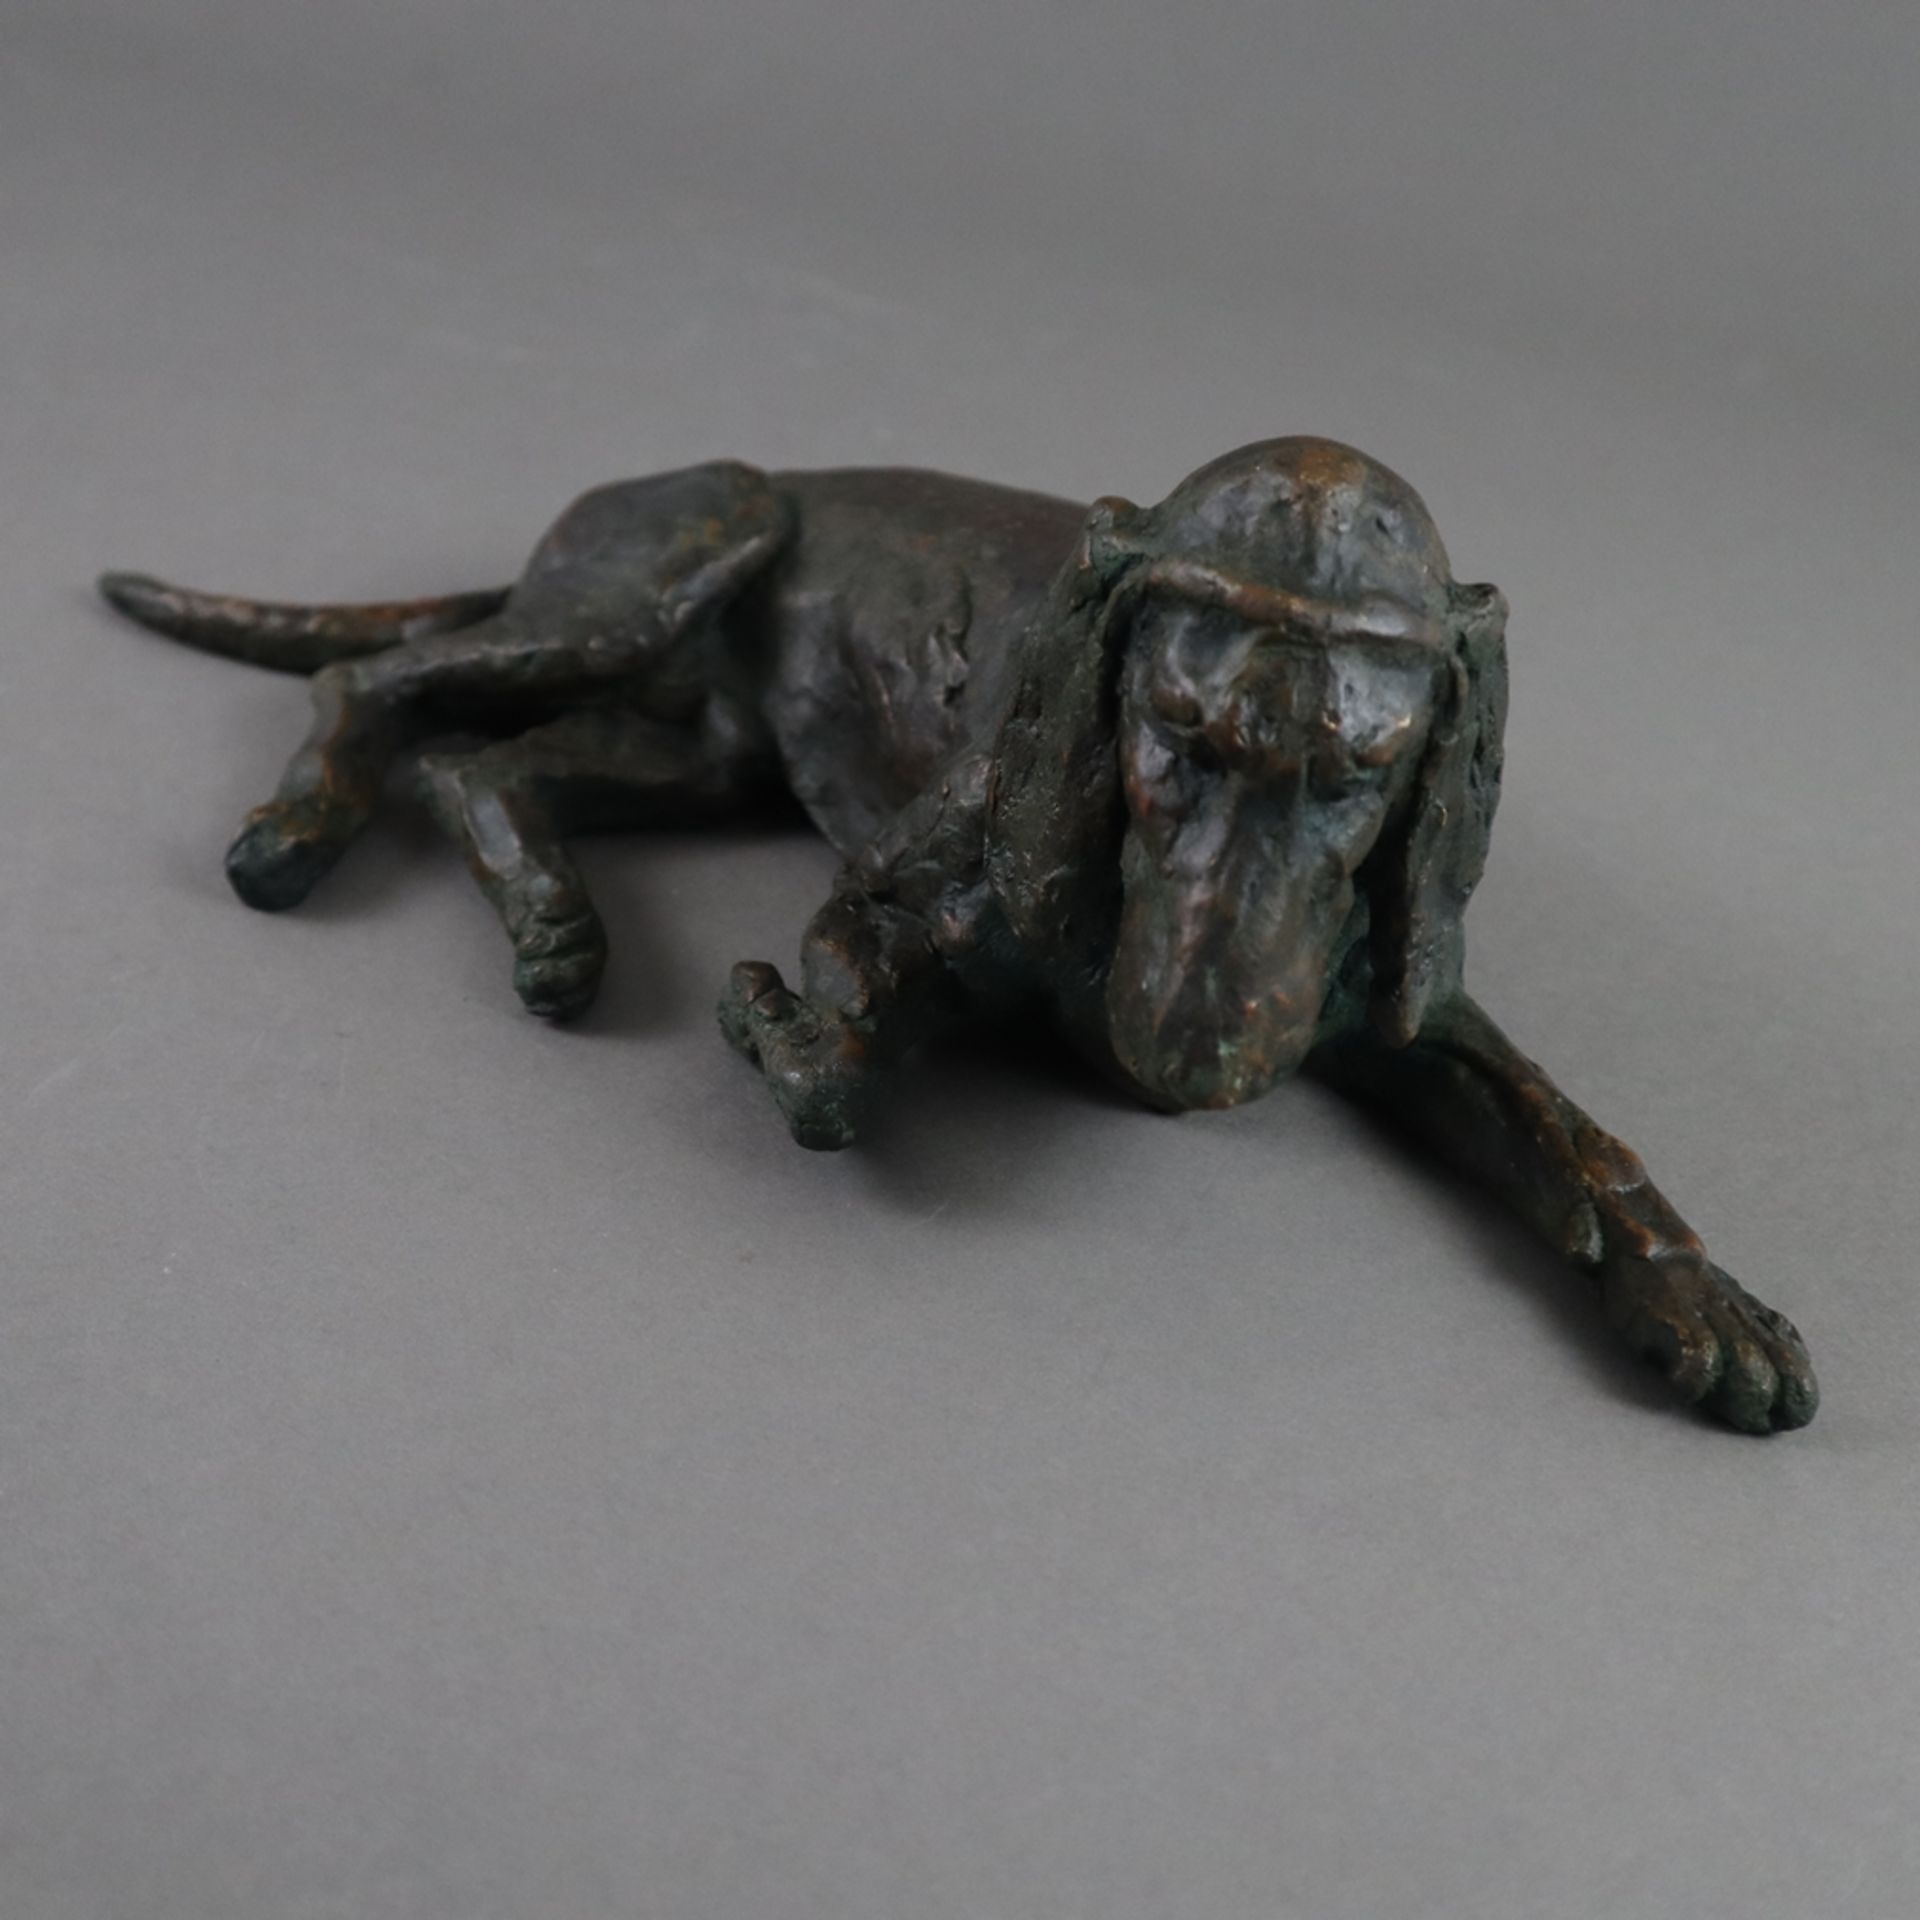 Tierfigur "Liegender Jagdhund" - 1. Hälfte 20. Jh., Bronze, dunkelbraun patiniert, Hohlguss, offene